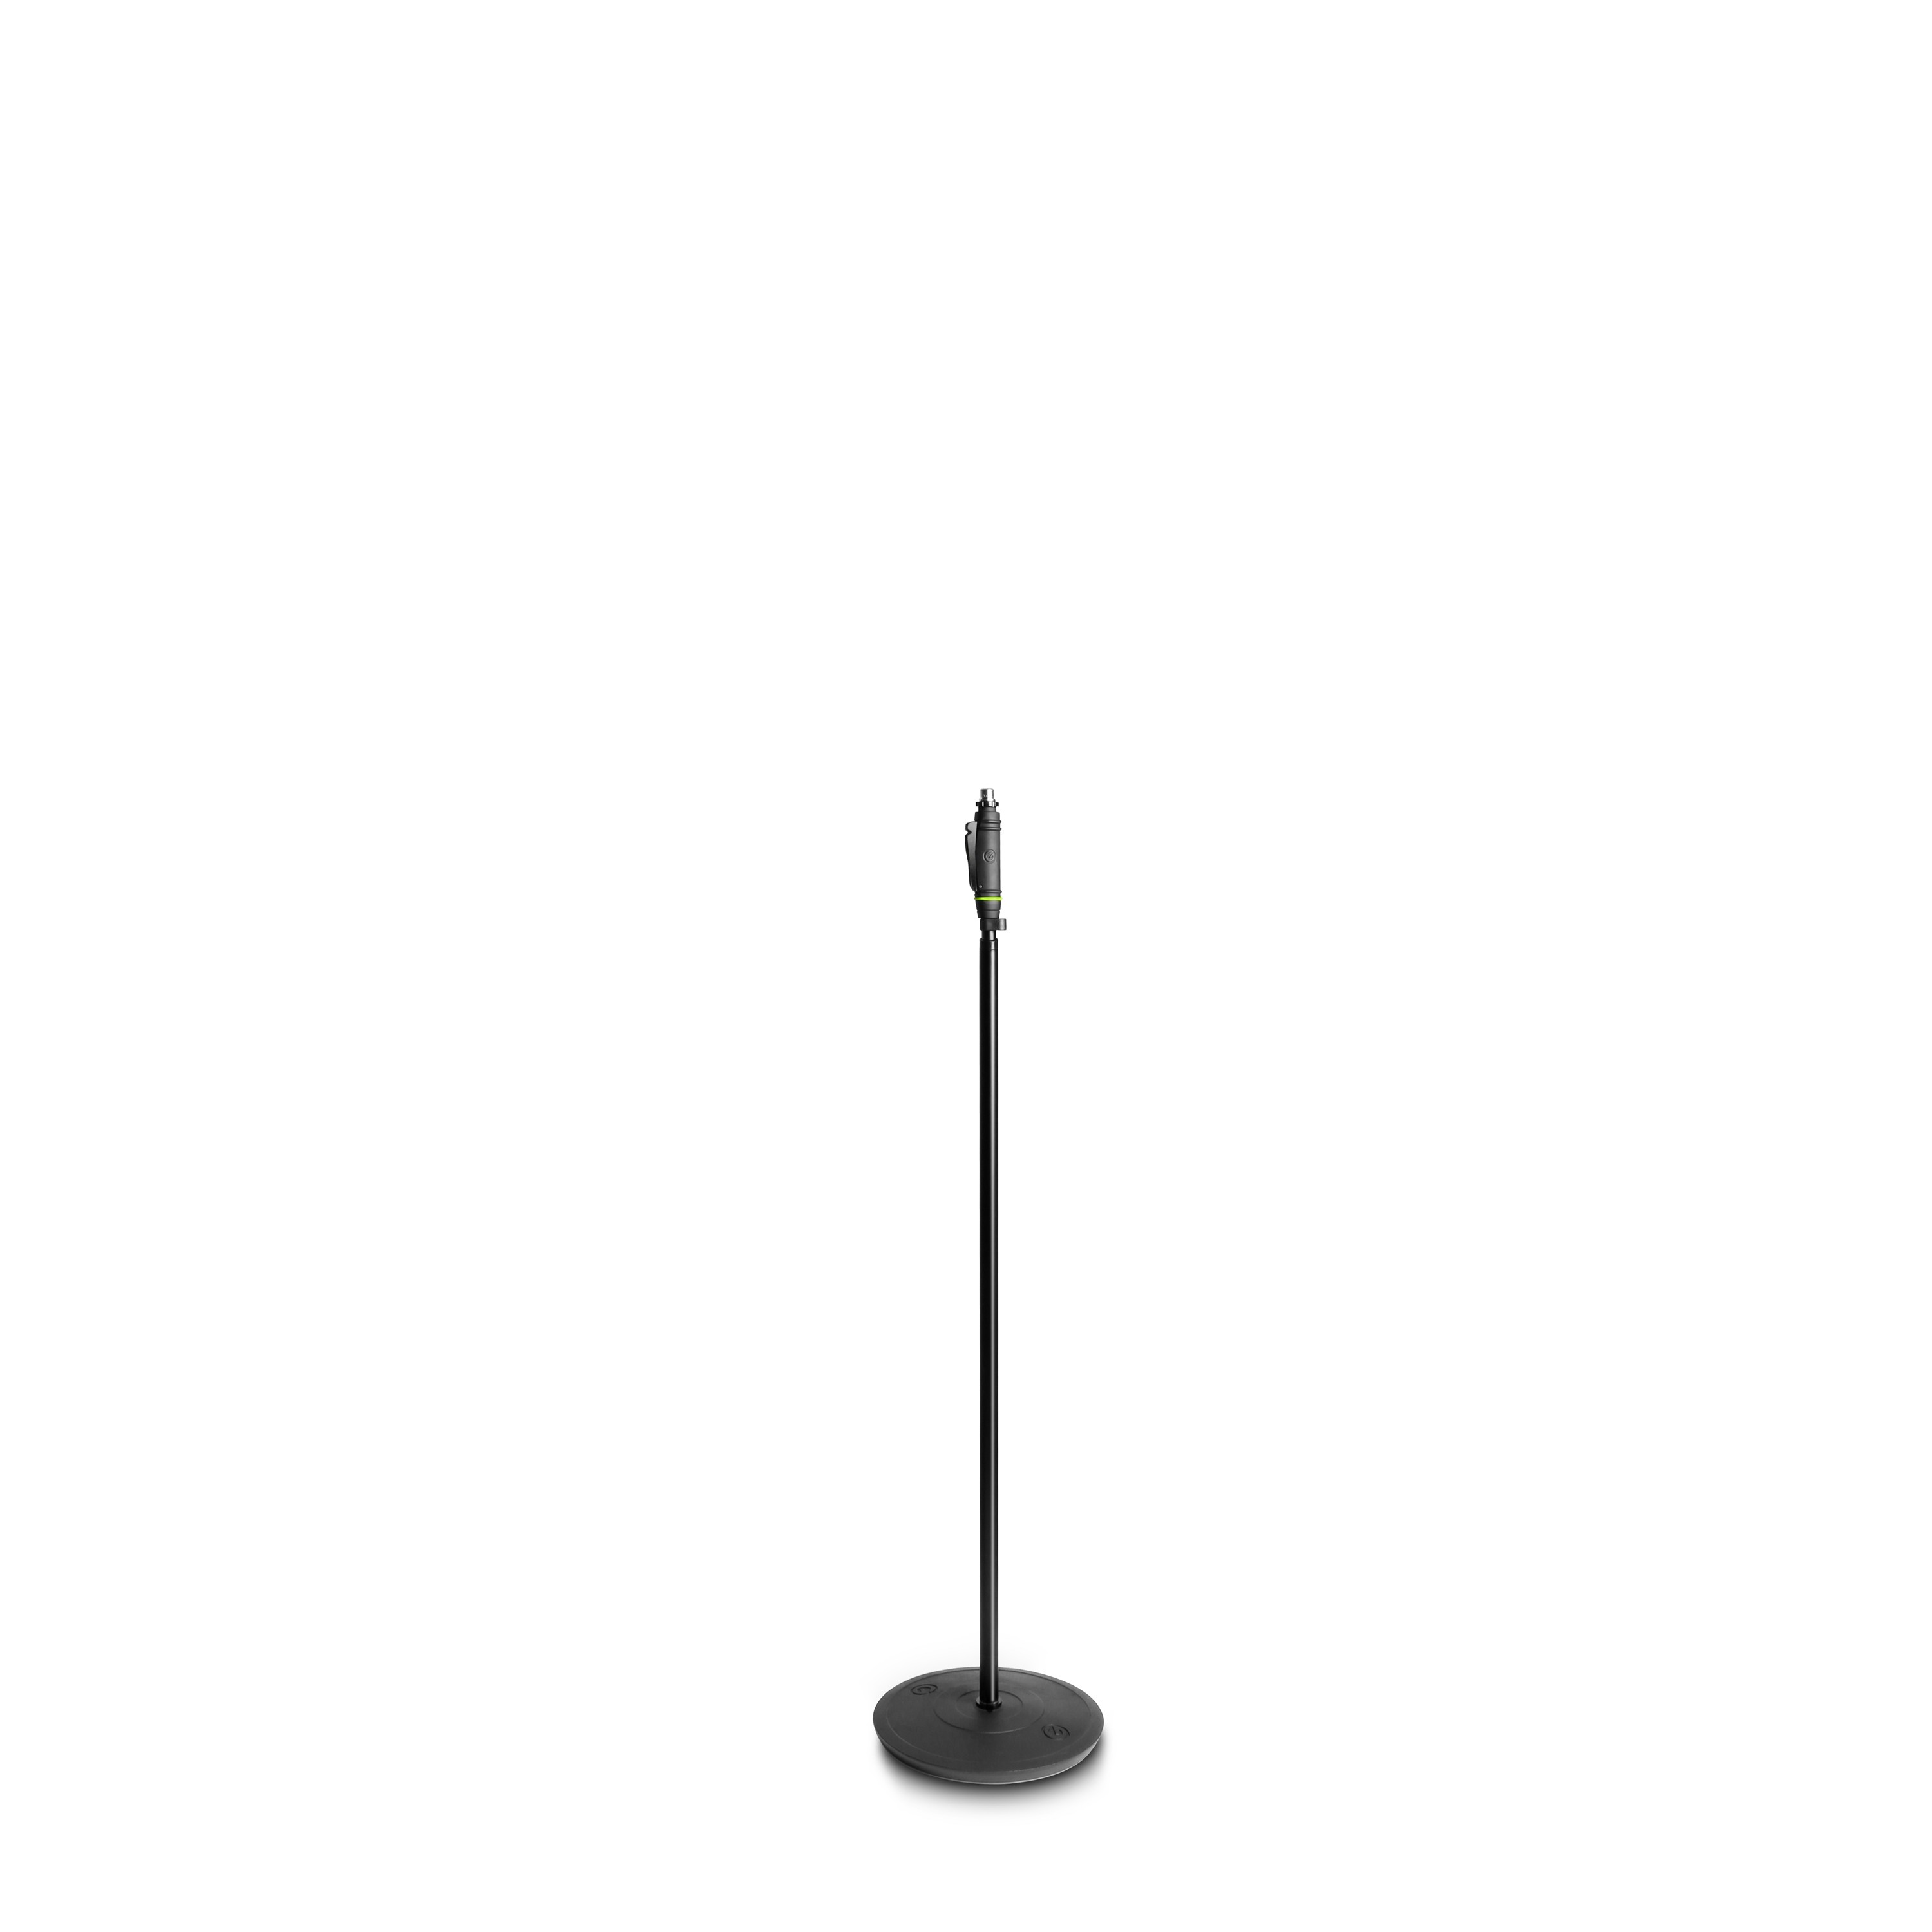 GRAVITY MS 231 HB - Прямая микрофонная стойка для вокалистов на тяжелом круглом основании. купить в prostore.me